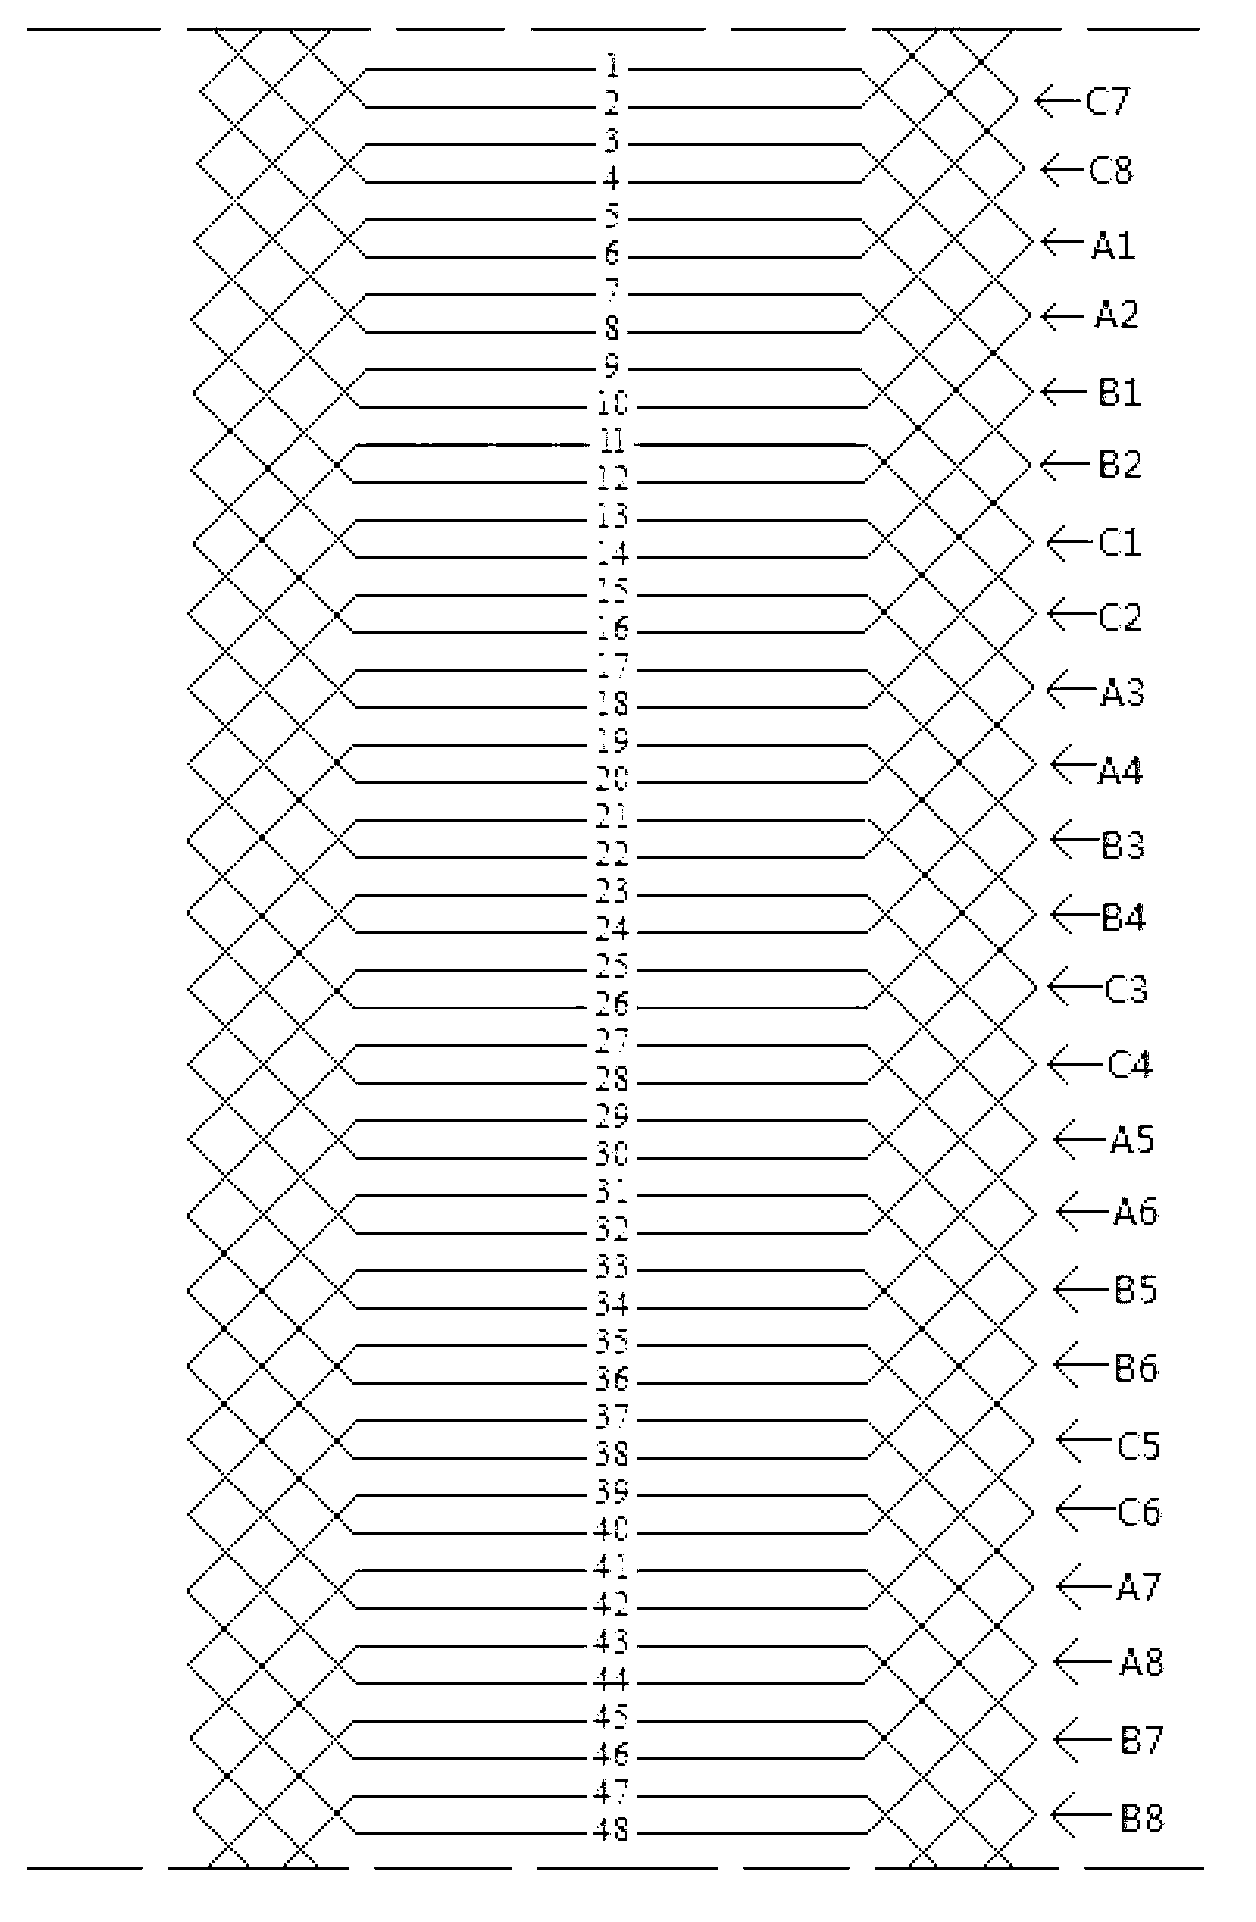 Single-layer short isometric winding of 48-slot 4-pole three-phase asynchronous motor